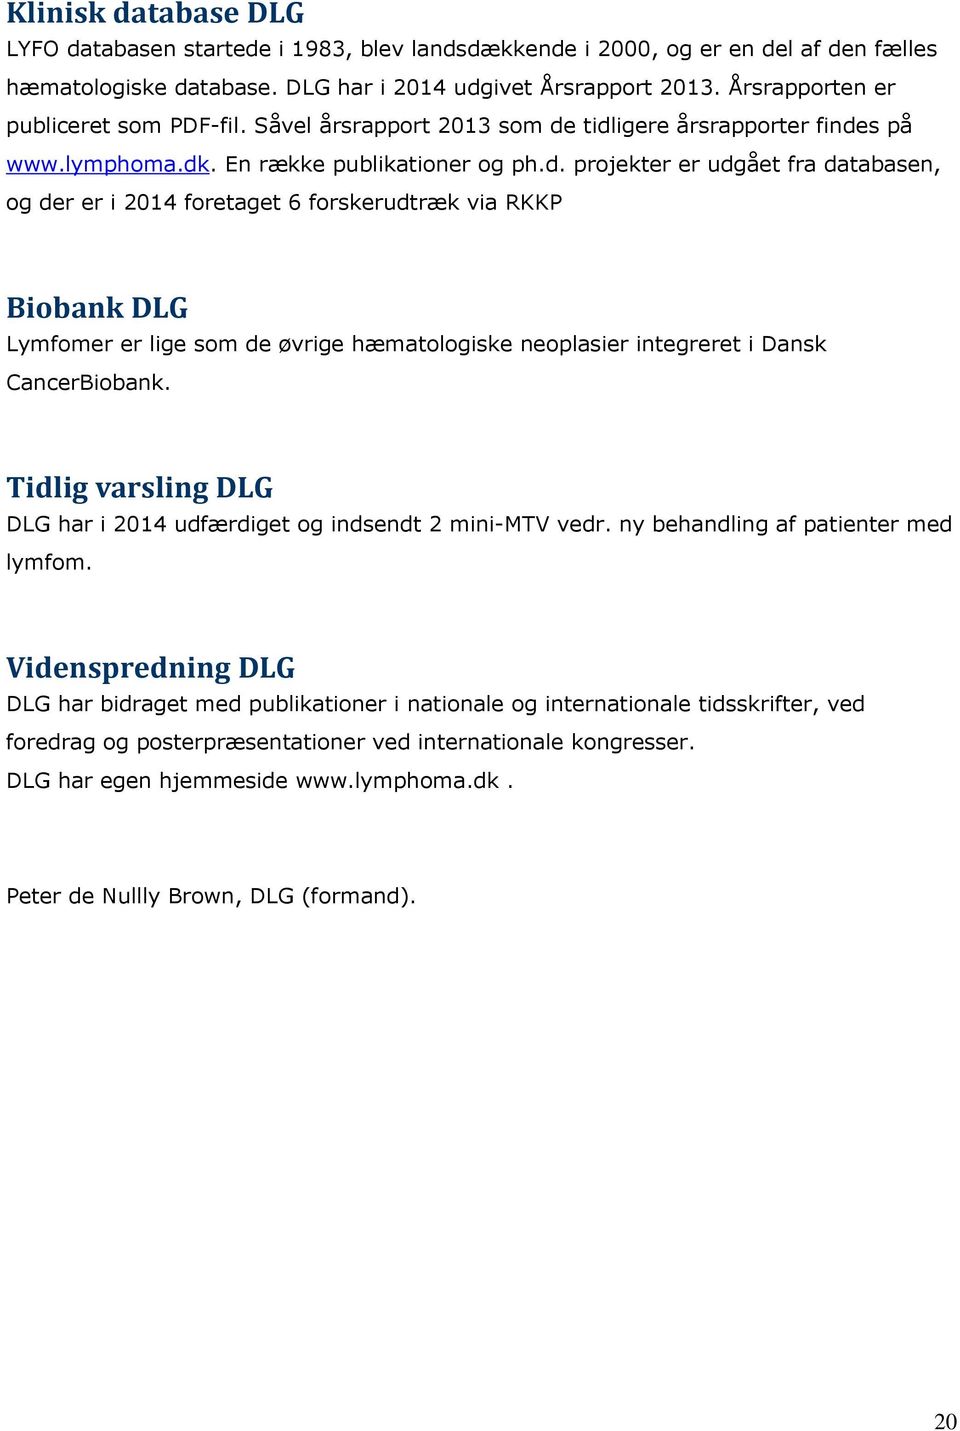 tidligere årsrapporter findes på www.lymphoma.dk. En række publikationer og ph.d. projekter er udgået fra databasen, og der er i 2014 foretaget 6 forskerudtræk via RKKP Biobank DLG Lymfomer er lige som de øvrige hæmatologiske neoplasier integreret i Dansk CancerBiobank.